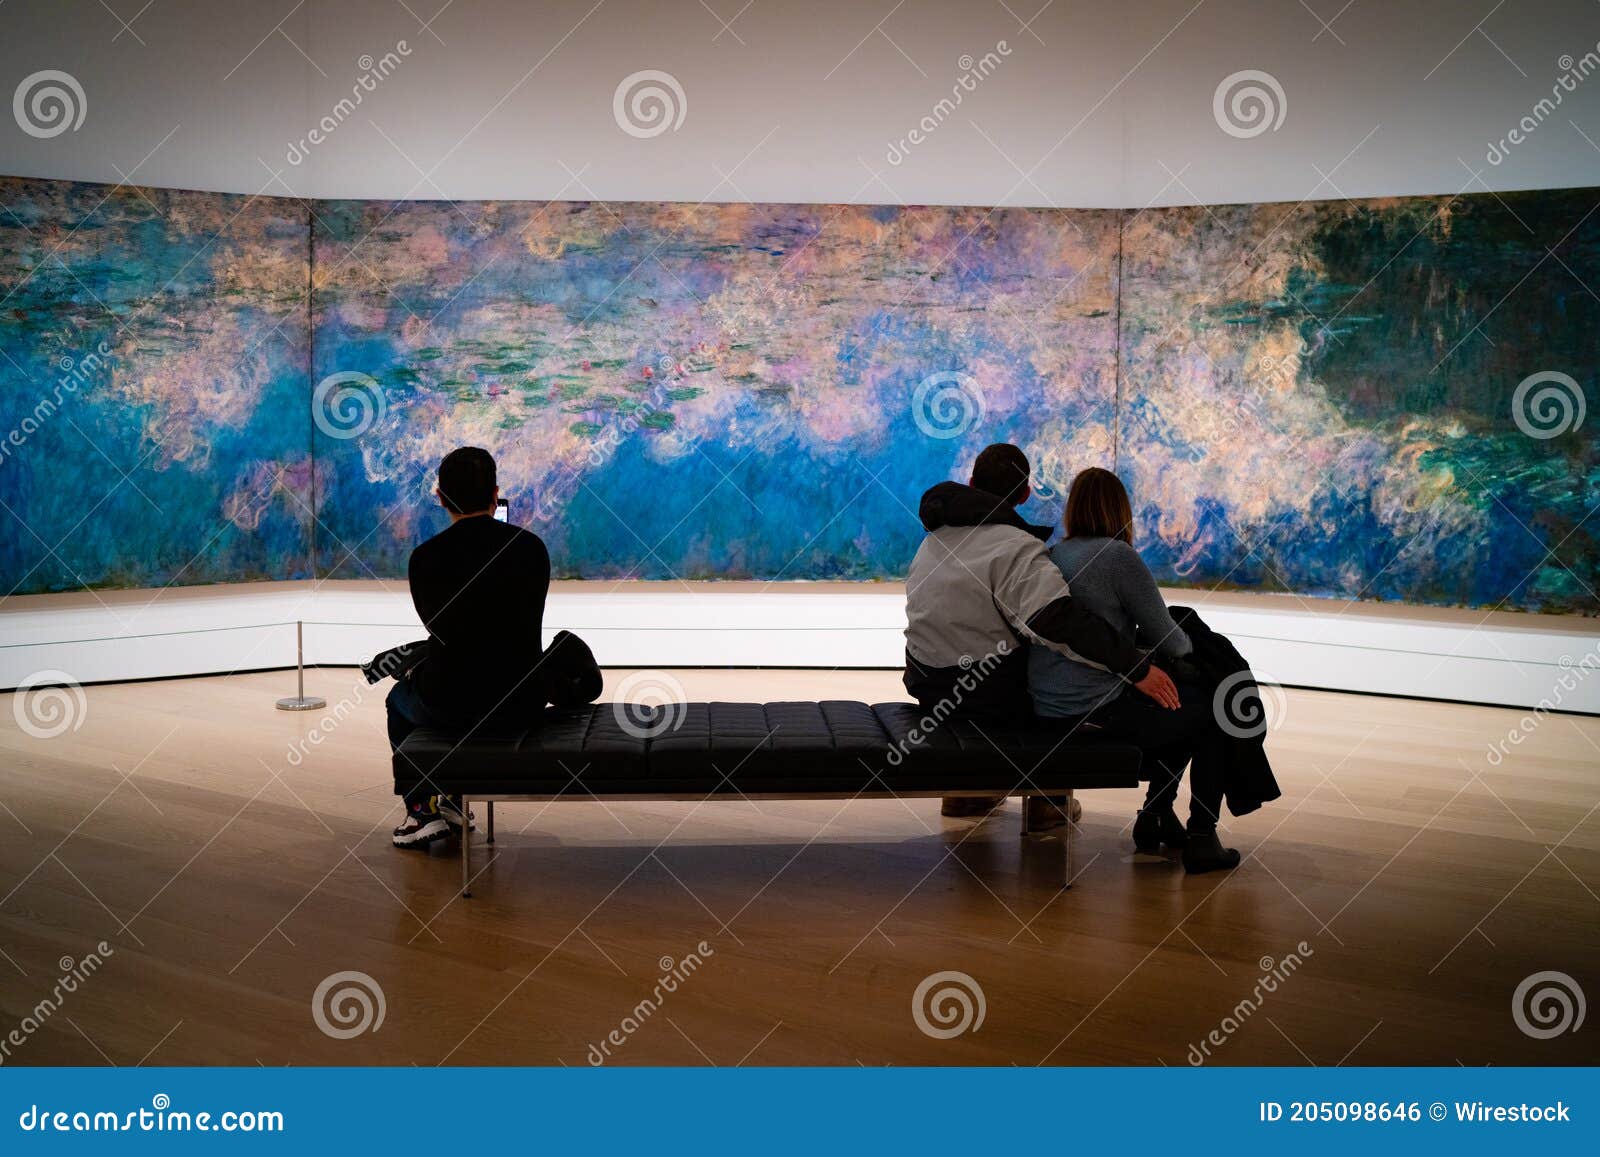 Hav psykologi Christchurch Monet am moma in New York redaktionelles foto. Bild von anstrich - 205098646